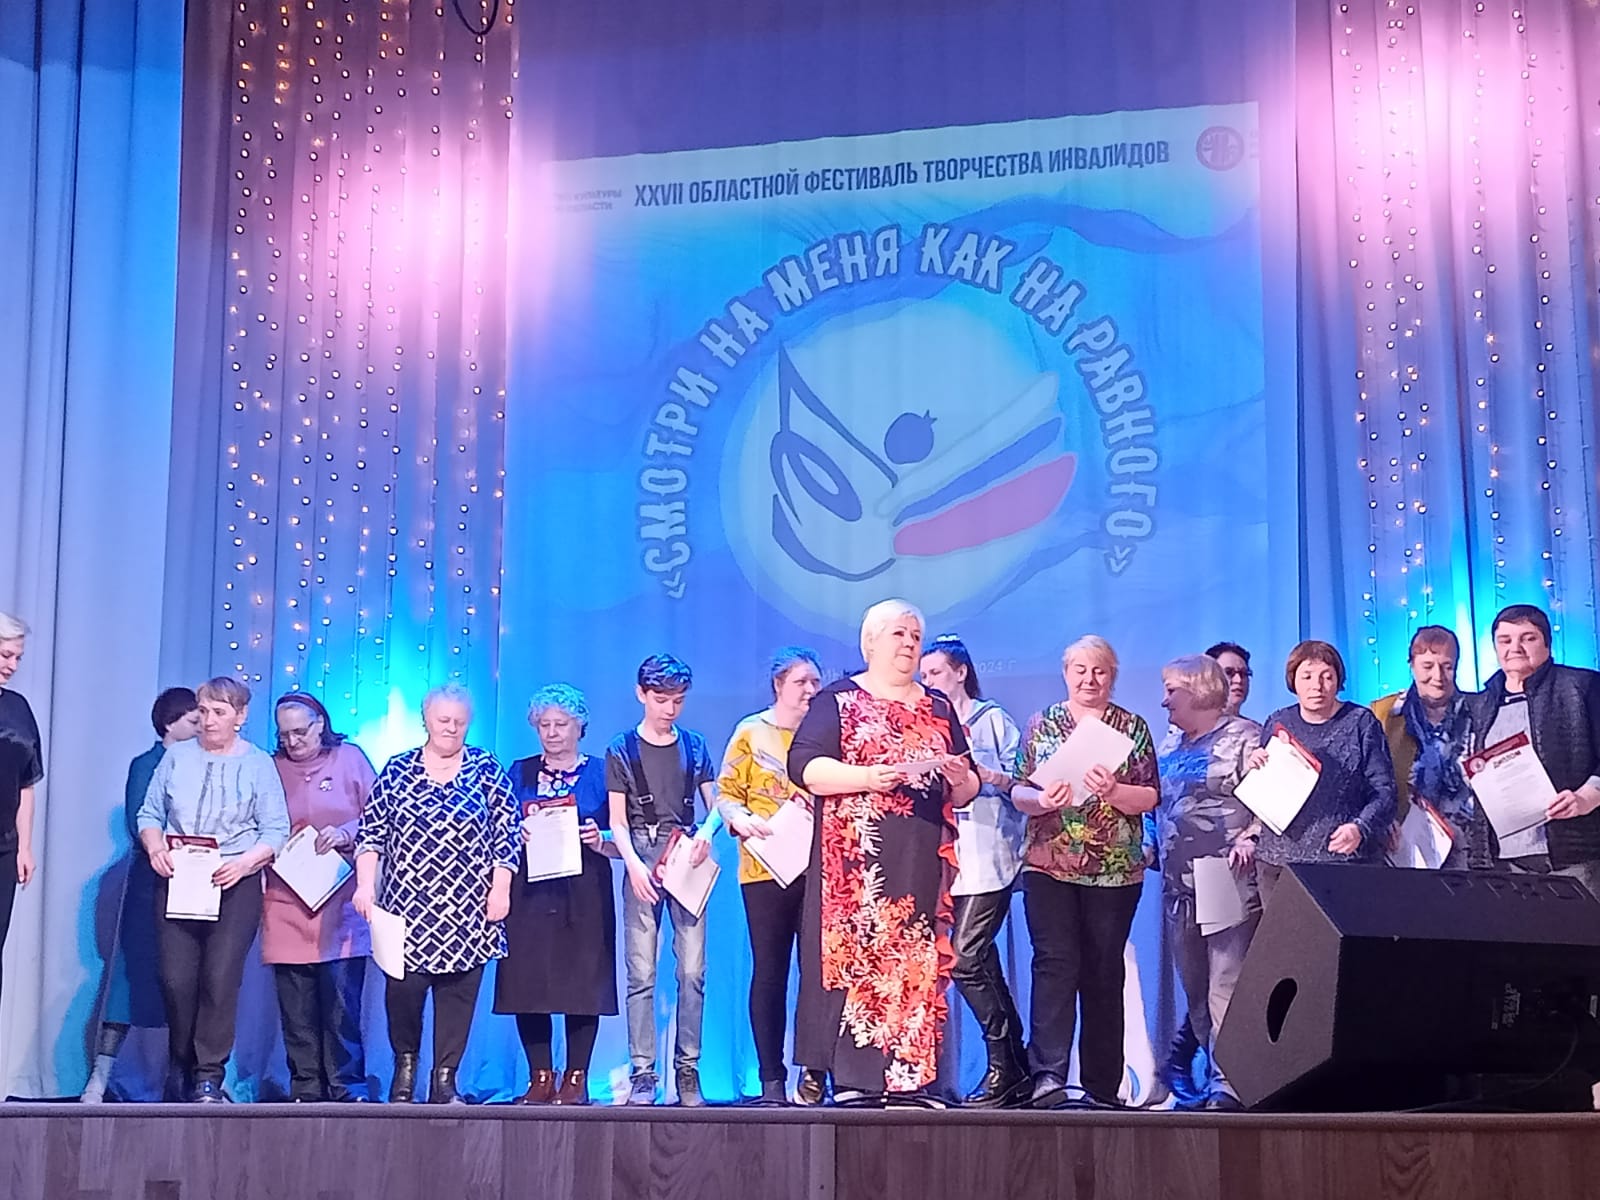 В Кыштыме прошёл второй этап Челябинского областного фестиваля творчества инвалидов “Смотри на меня как на равного “